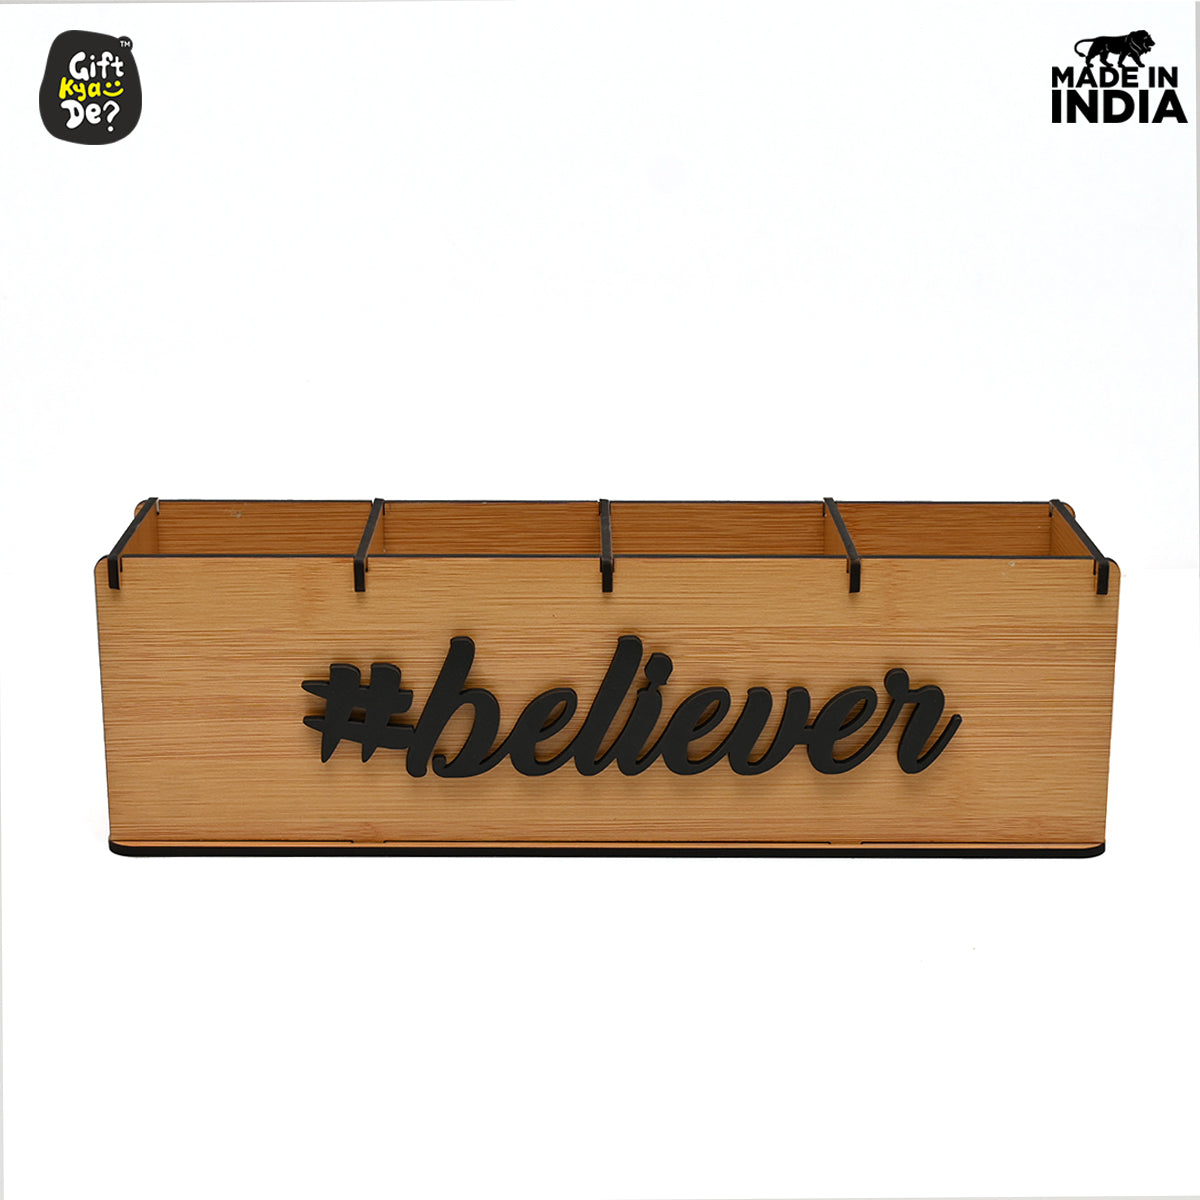 believer - wooden